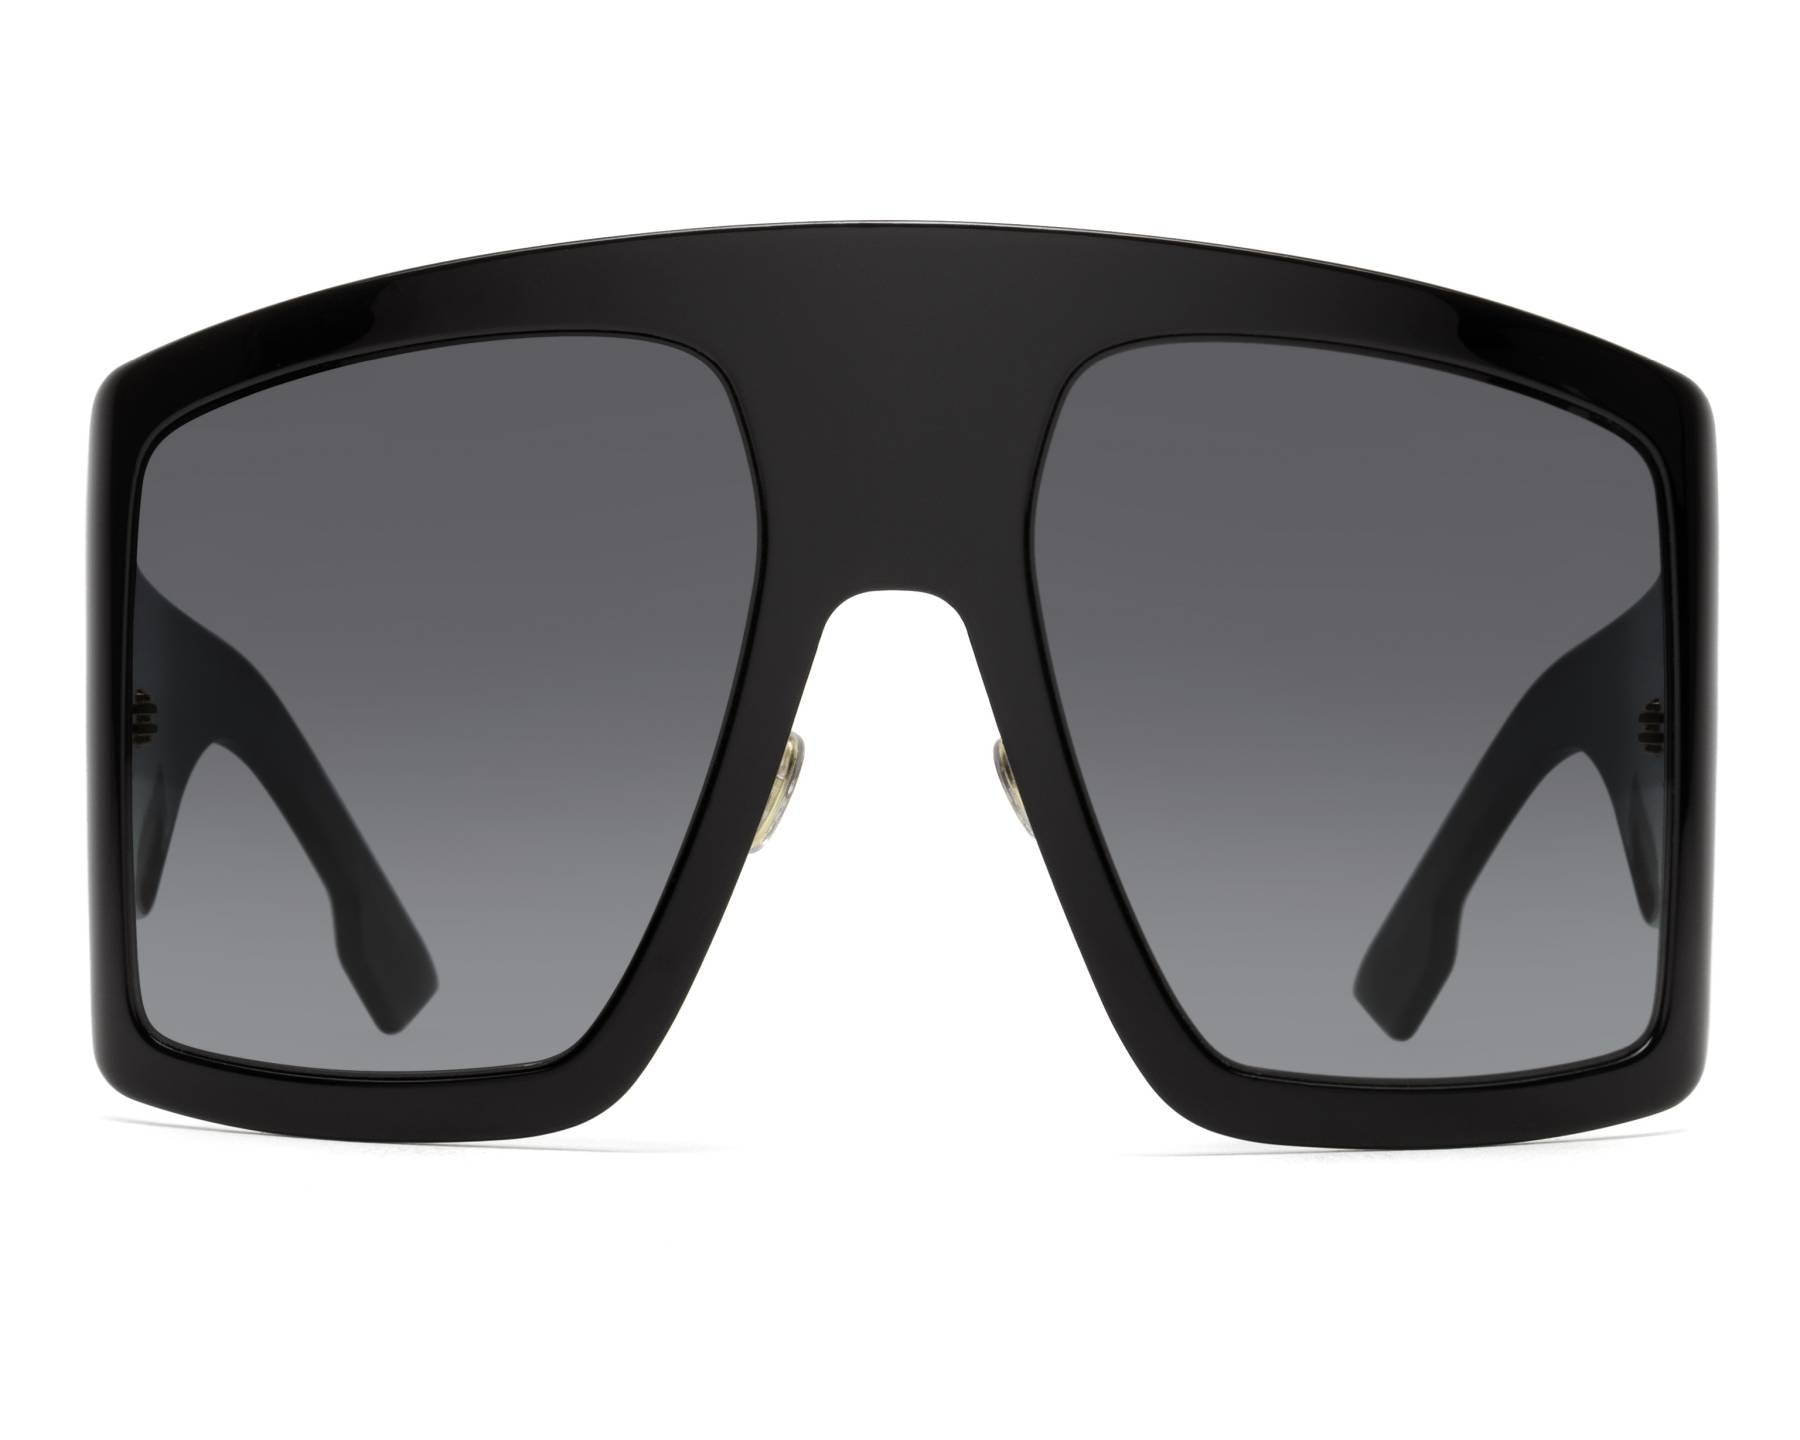 Dior SoLight1 Shield Sunglasses in 